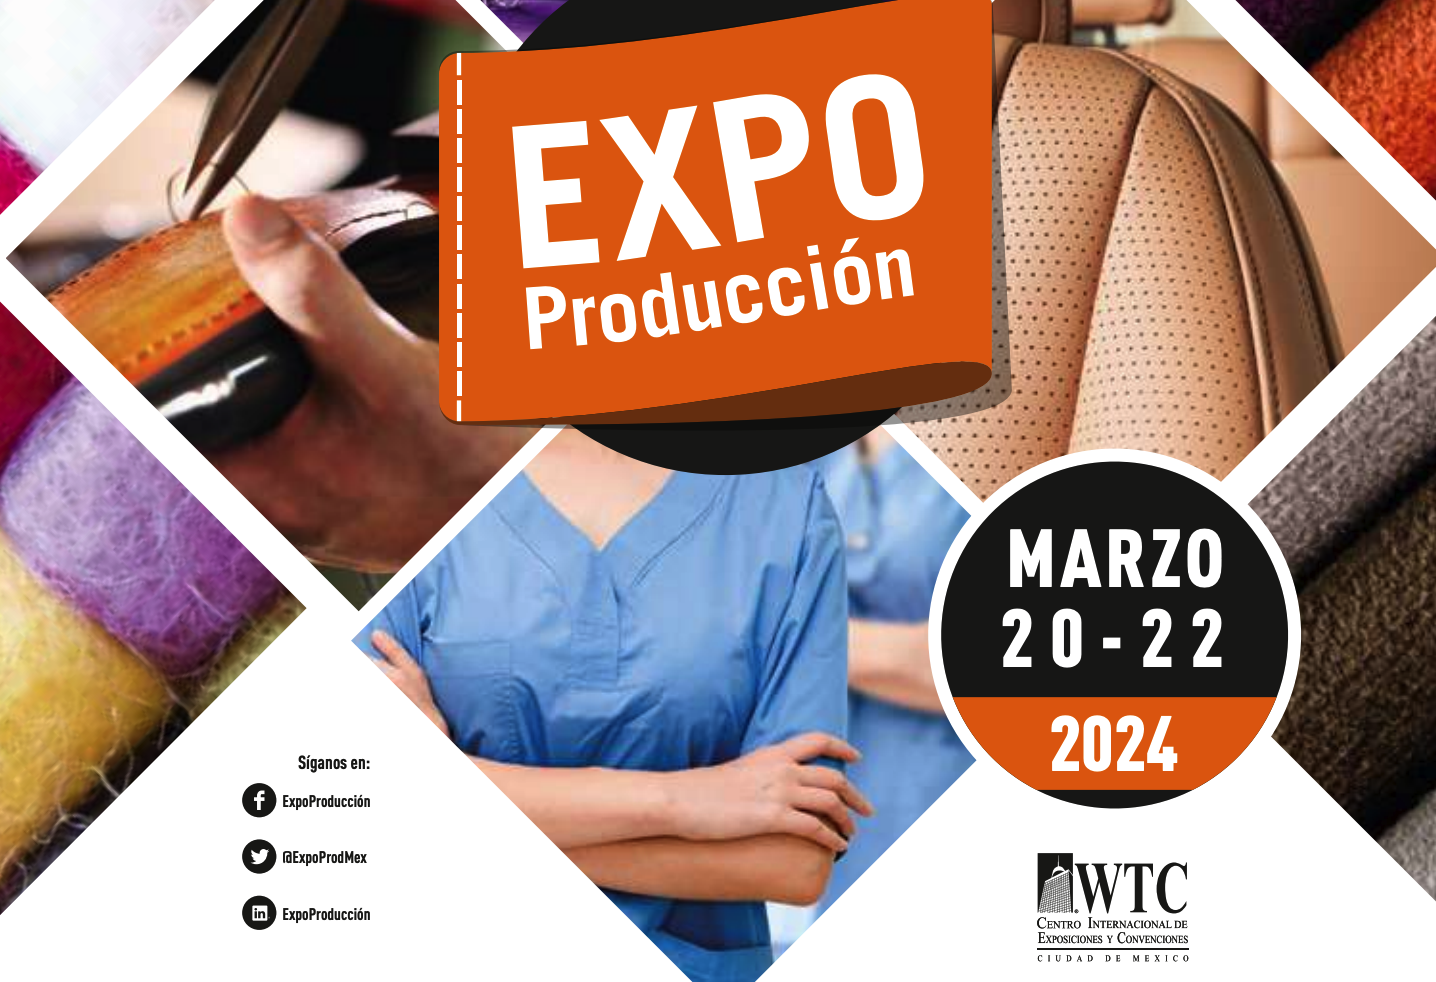 墨西哥纺织工业展 Expo Produccion